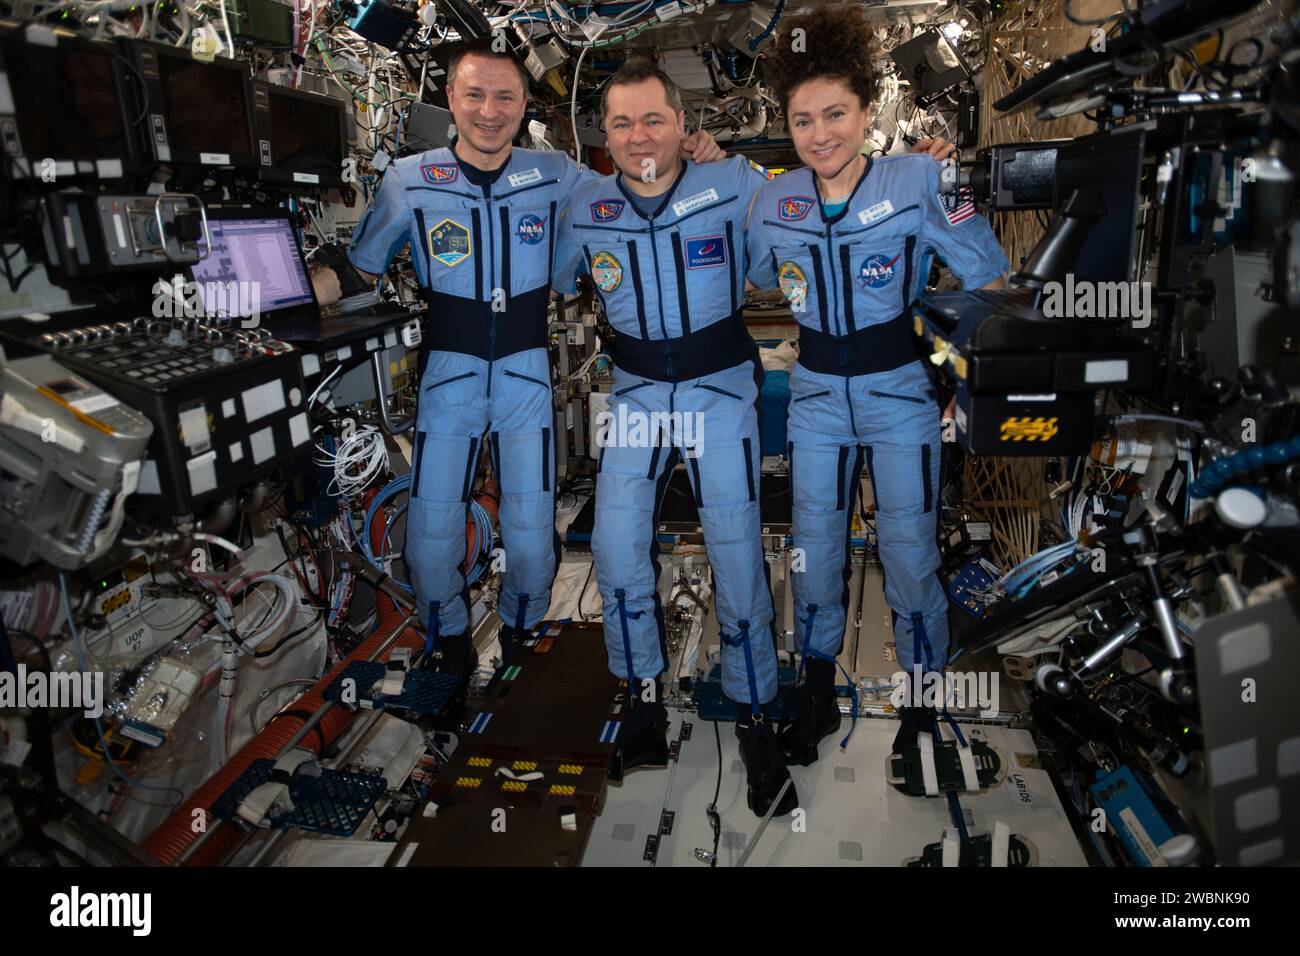 Iss062e116029 (29. März 2020) --- NASA Flight Engineers Andrew Morgan und Jessica Meir Flank Expedition 62 Commander Oleg Skripochka von Roscosmos für ein Porträt in der schwerelosen Umgebung der Internationalen Raumstation. Stockfoto